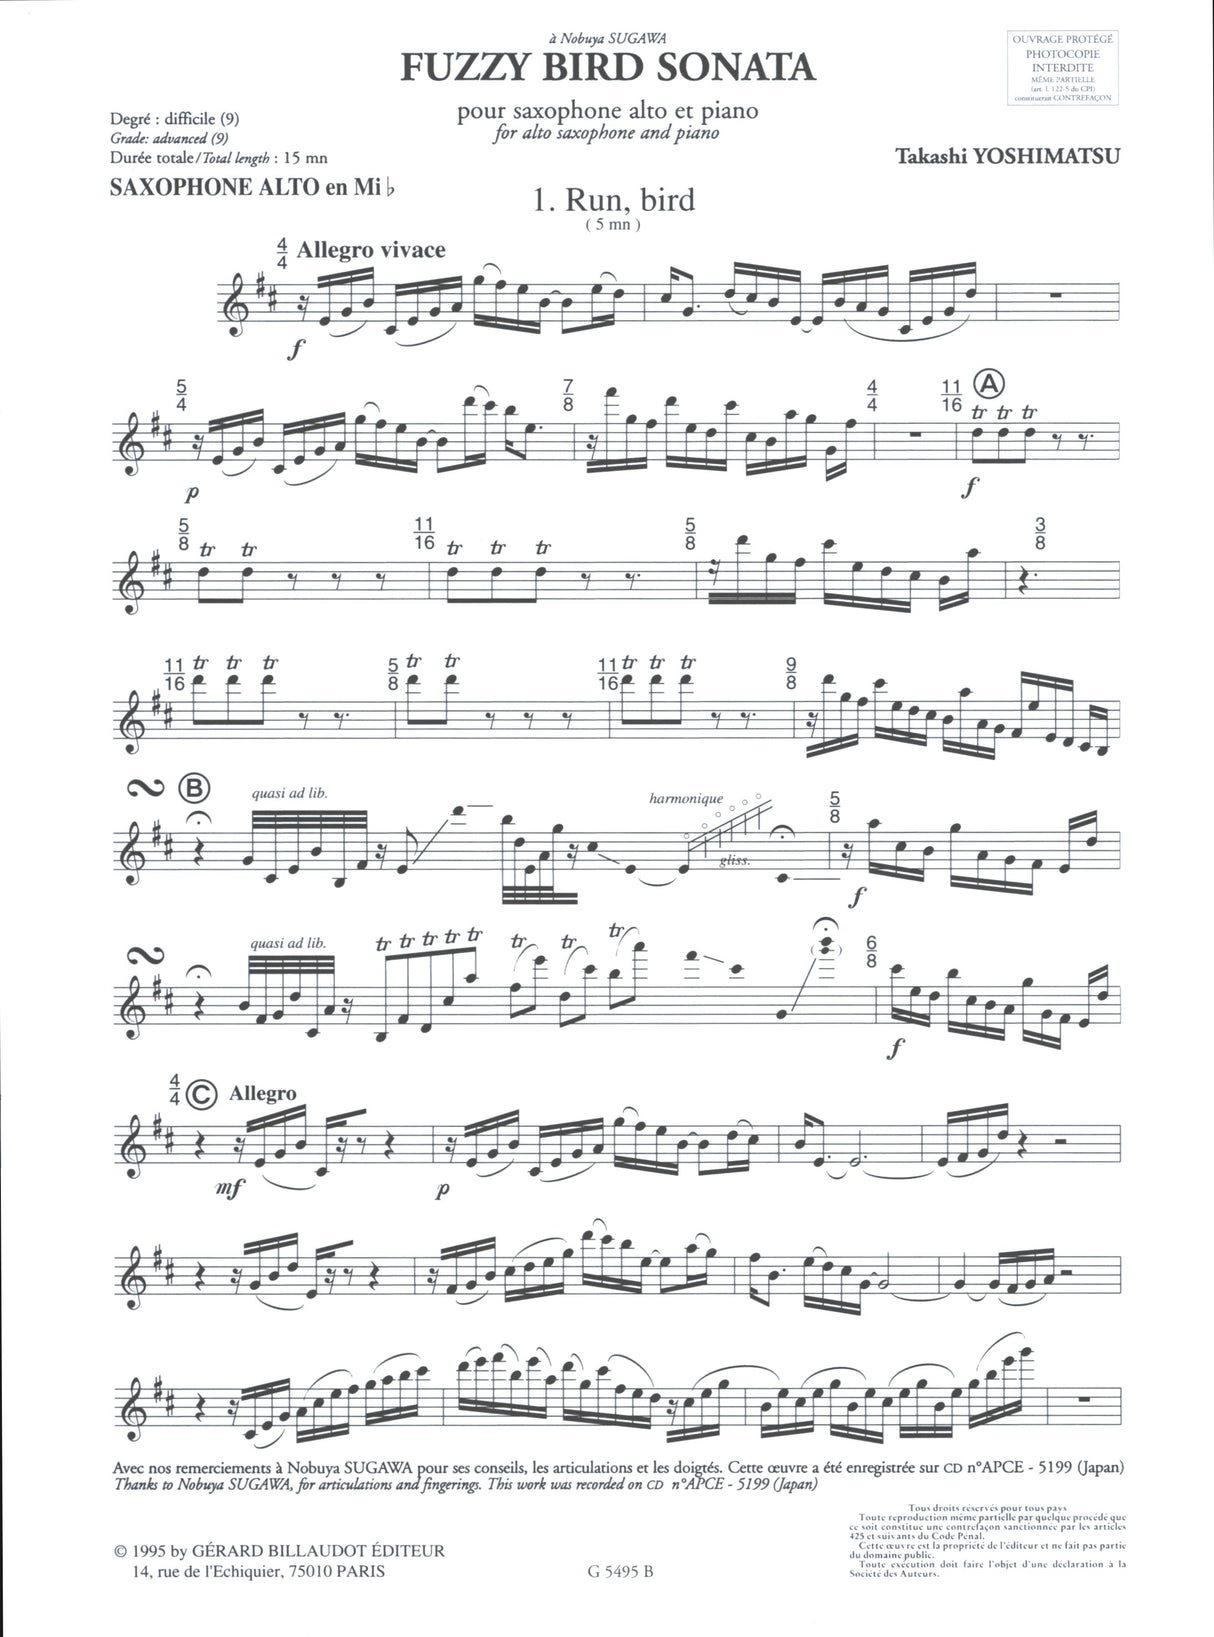 Yoshimatsu: Fuzzy Bird Sonata